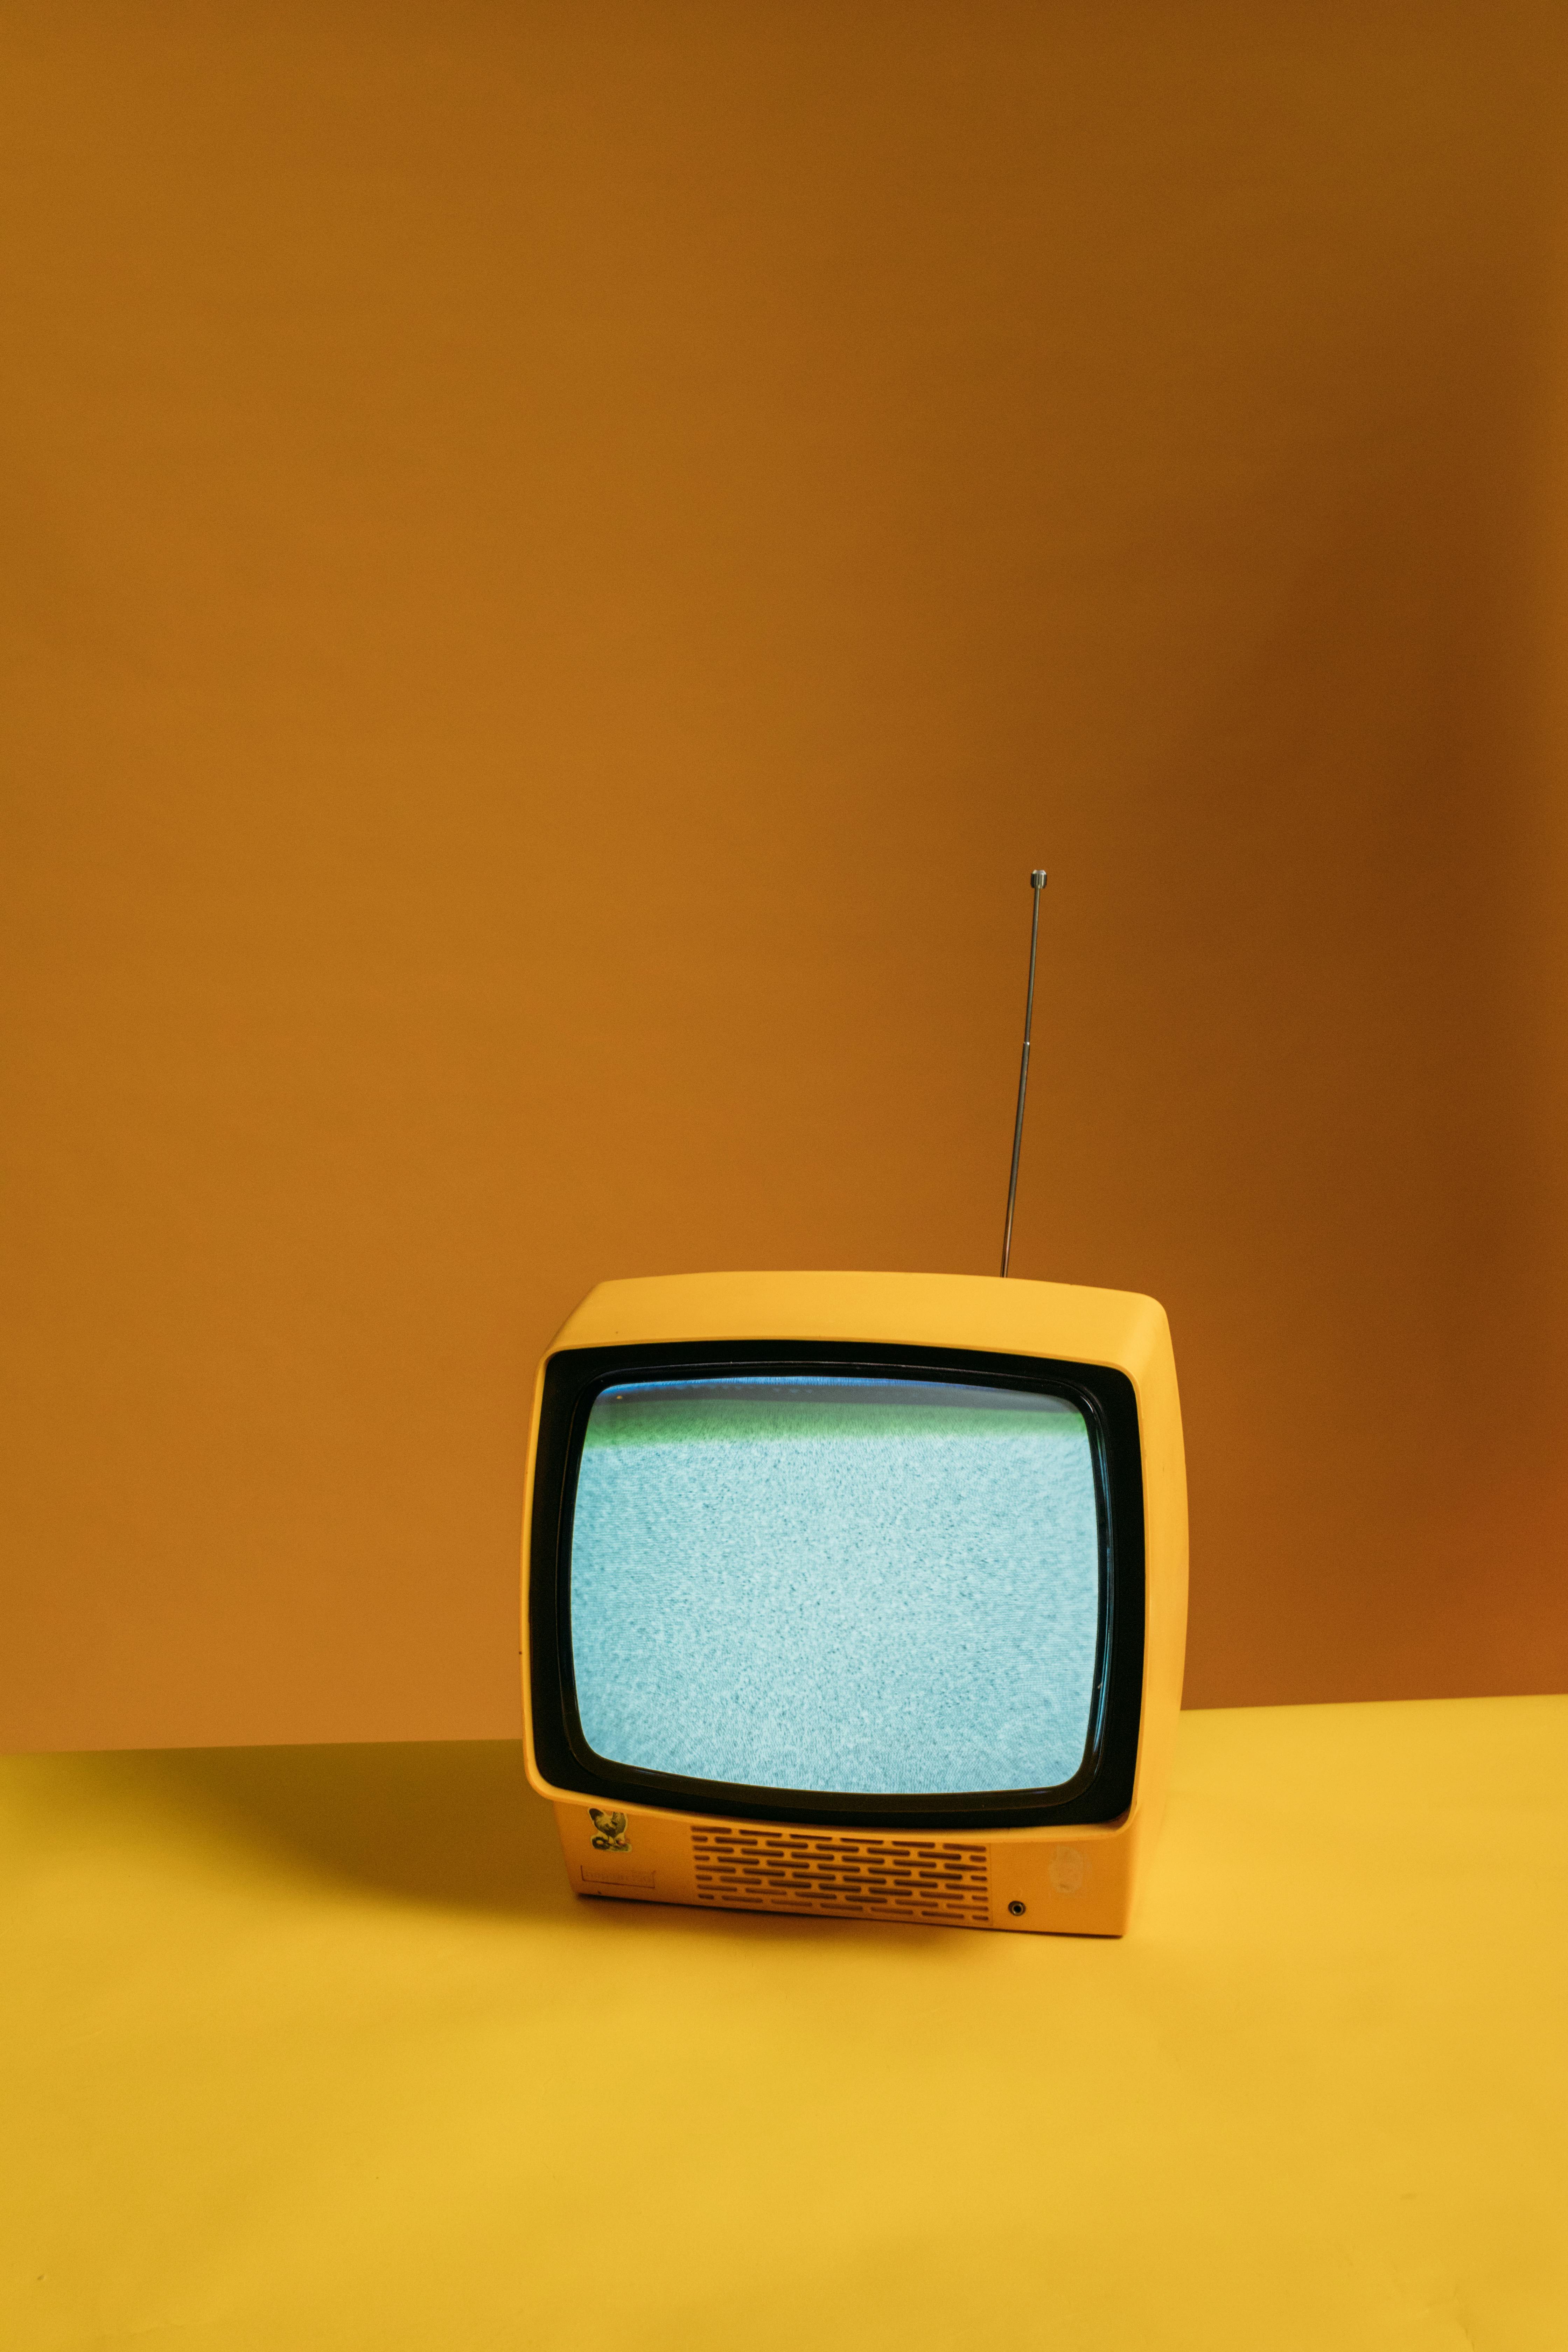 Classic Yellow TV: Một chiếc TV cổ nổi bật với tông màu vàng đậm, thiết kế hoài cổ nhưng cực kỳ độc đáo và sáng tạo, chắc chắn sẽ khiến bạn có những trải nghiệm thú vị trong hành trình khám phá không gian nhà cổ của bạn.